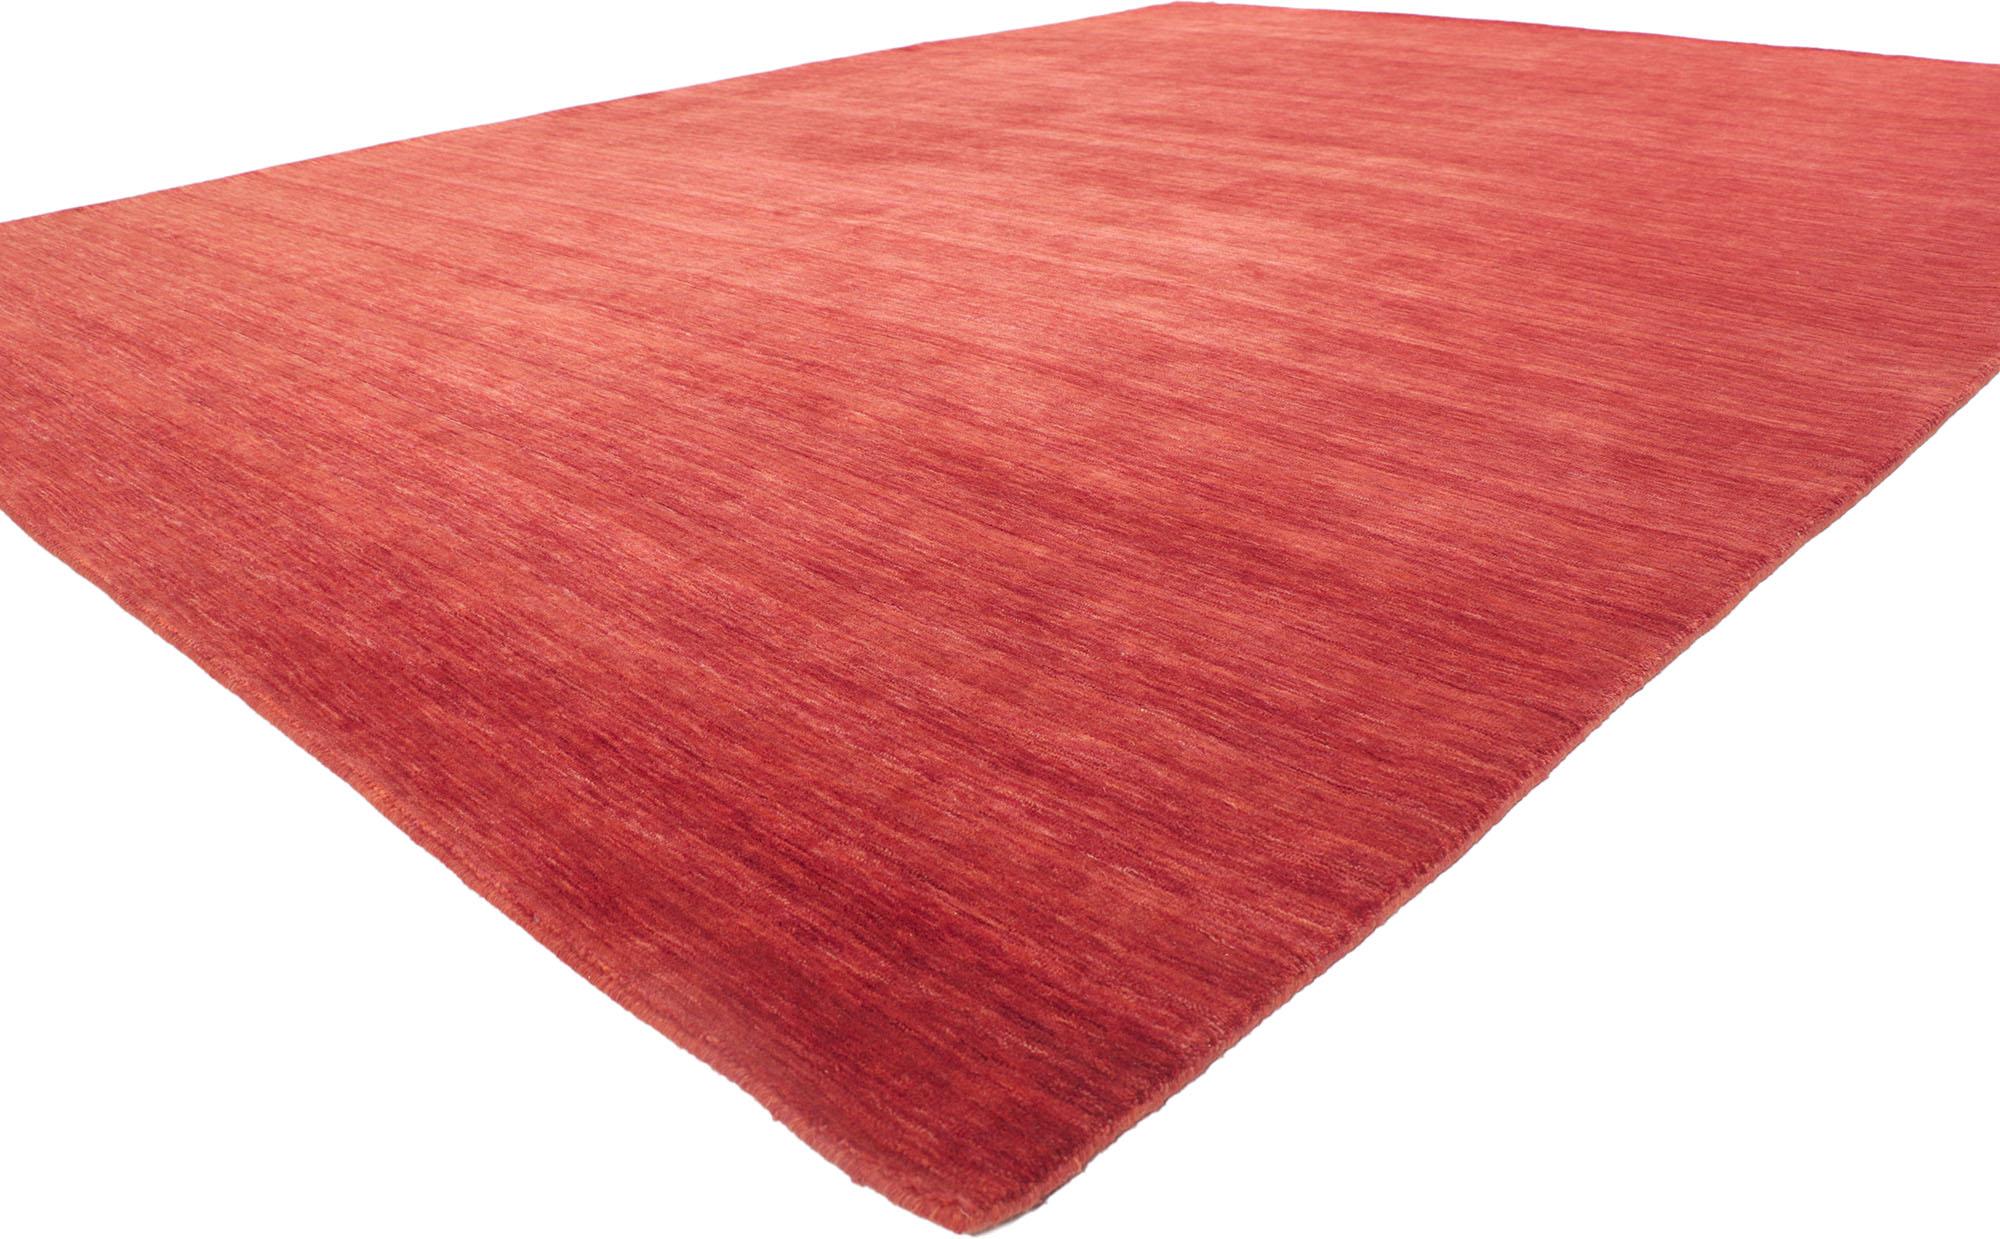 30728 New Contemporary Red Area rug with Modern Style 09'07 x 12'10. Ce tapis indien contemporain est à la fois simple, élégant et décontracté. Il présente de superbes teintes rouges et des stries doucement dégradées d'une lisière à l'autre, qui se